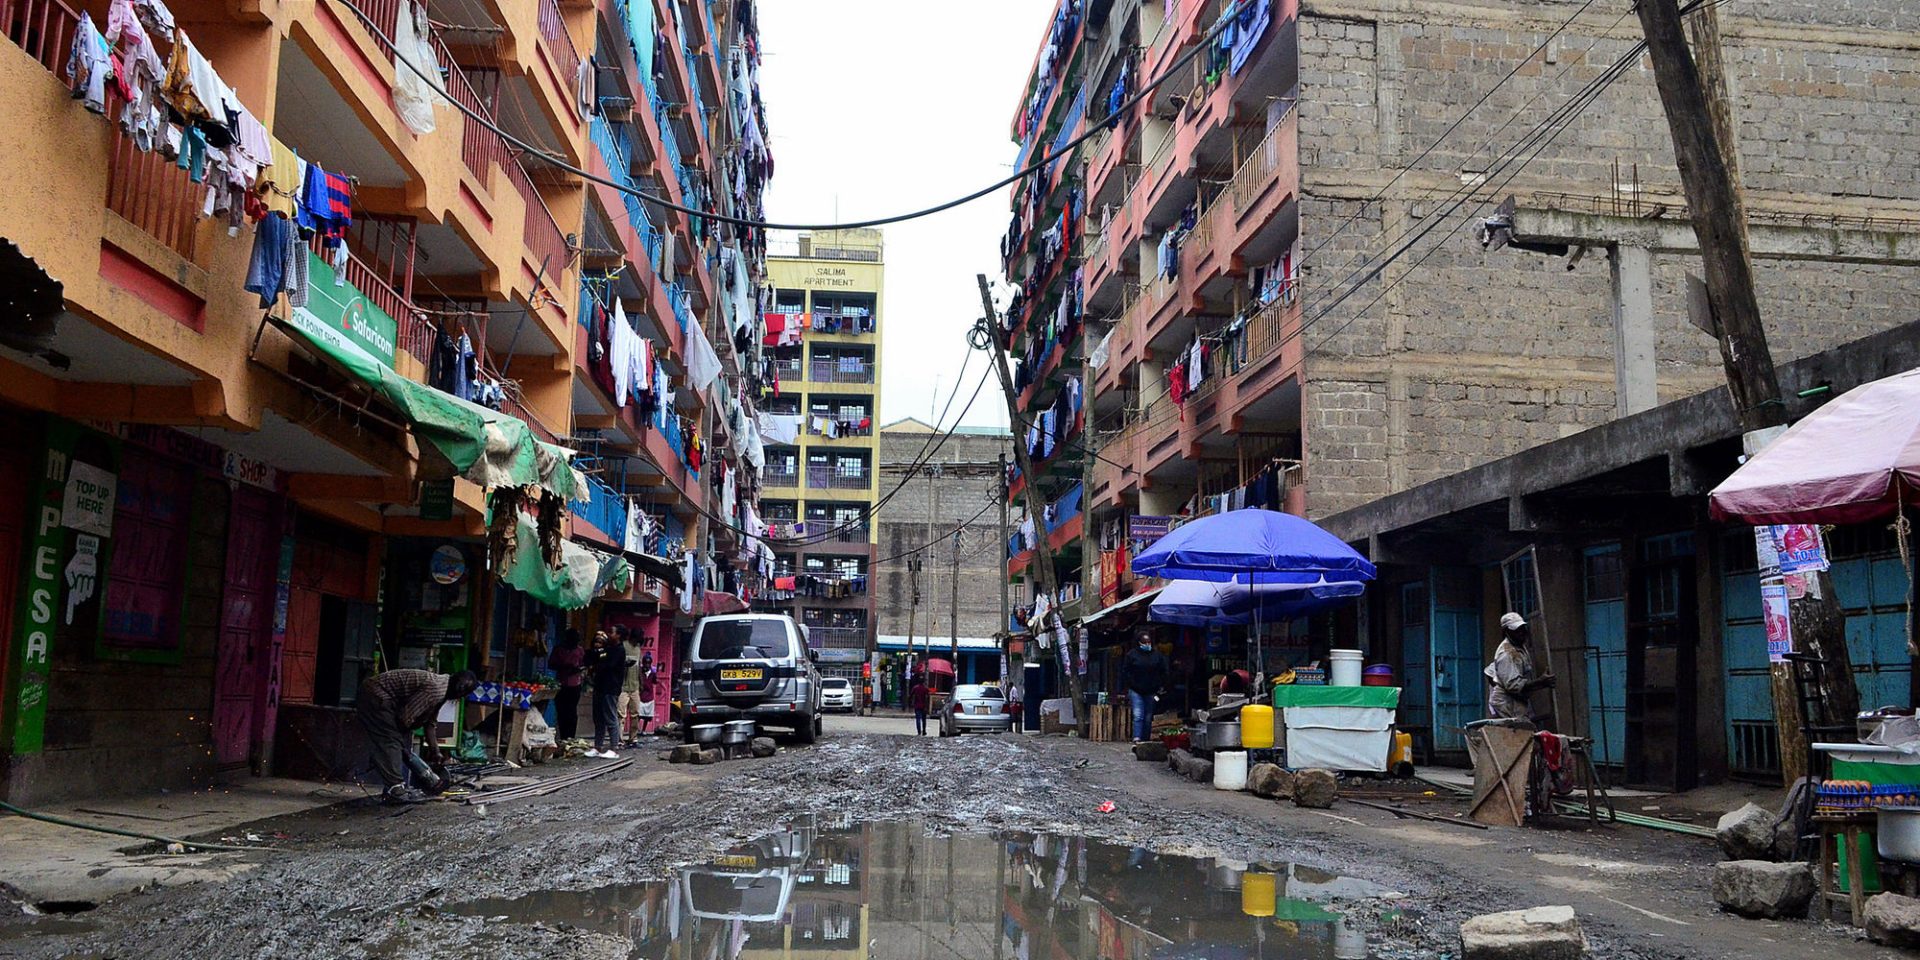 Karen Estate In Nairobi to become a slum